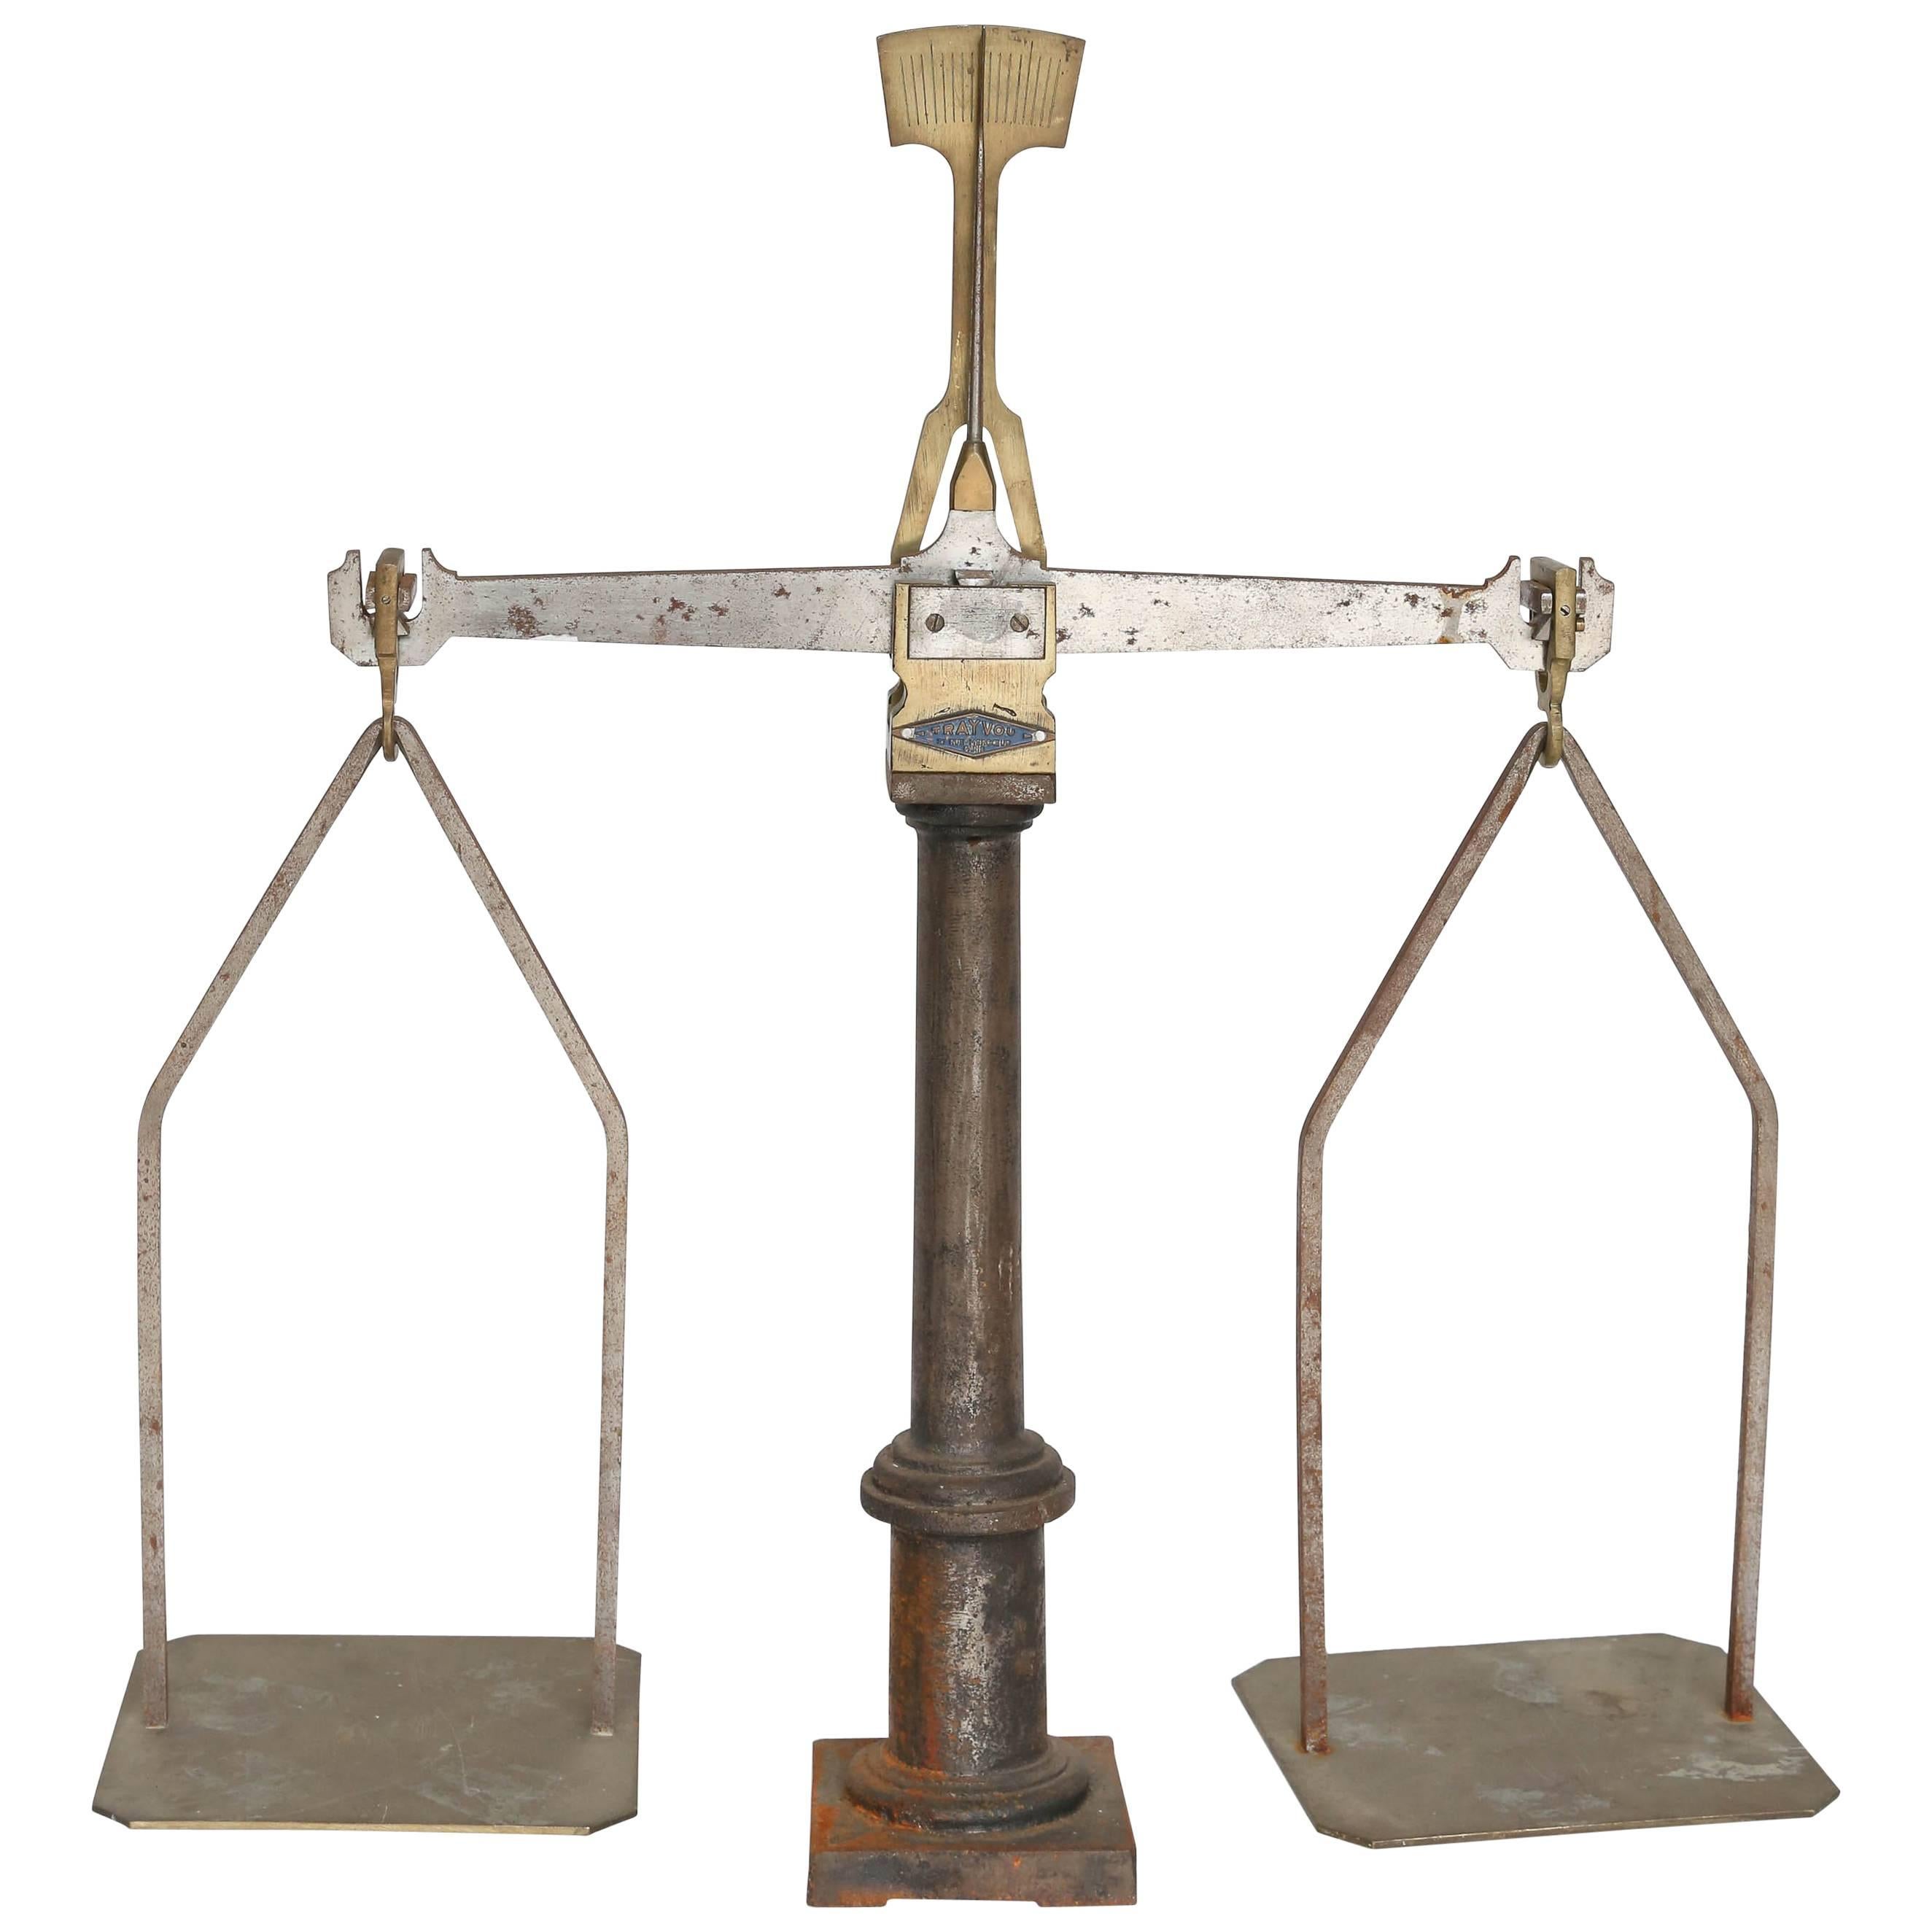 Iron and Brass Trayvou Balance Scale